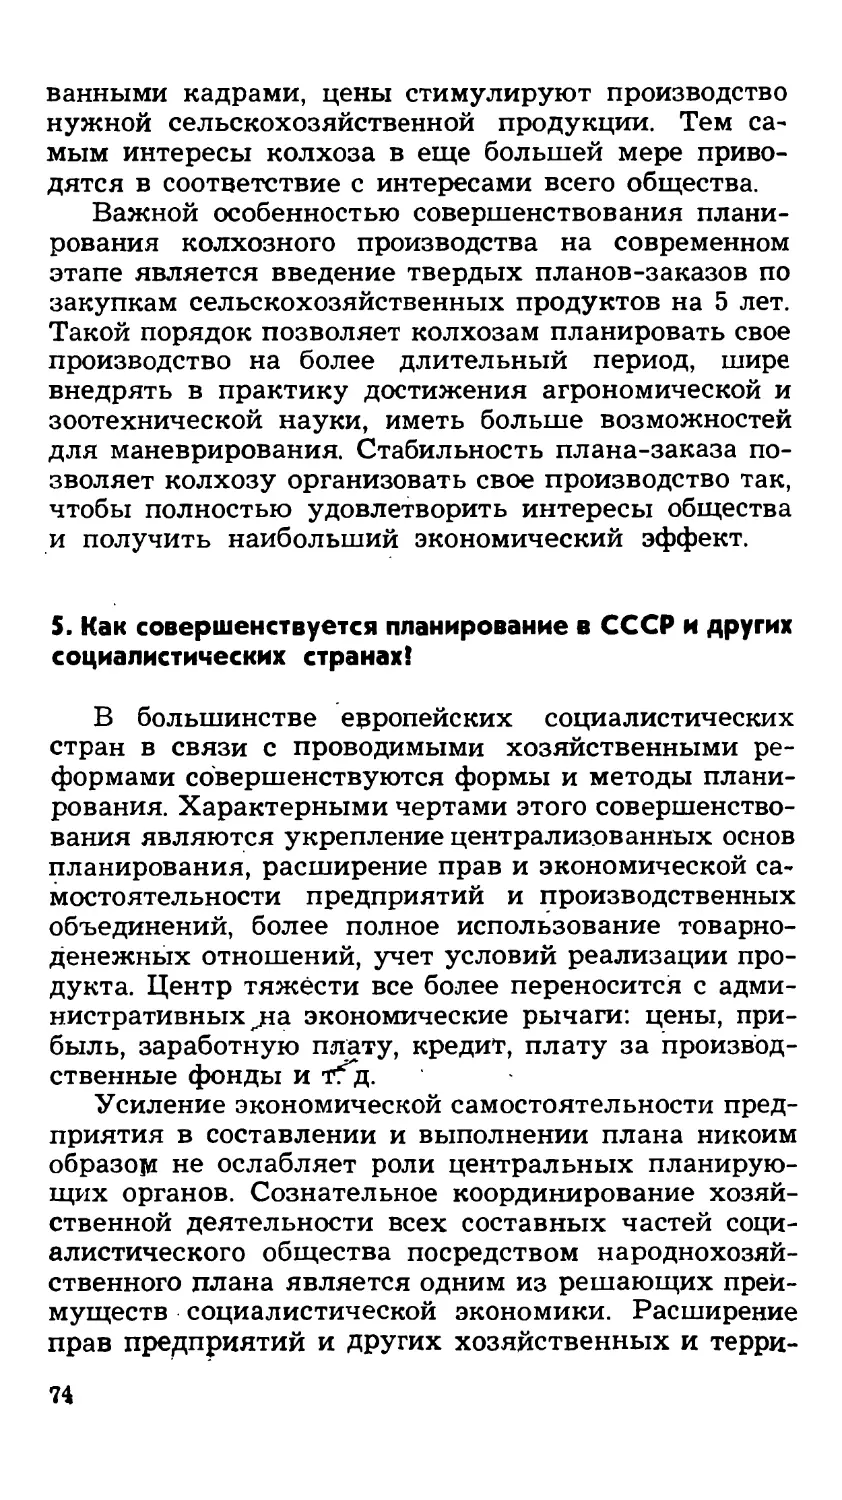 5. Как совершенствуется планирование в СССР и других социалистических странах?